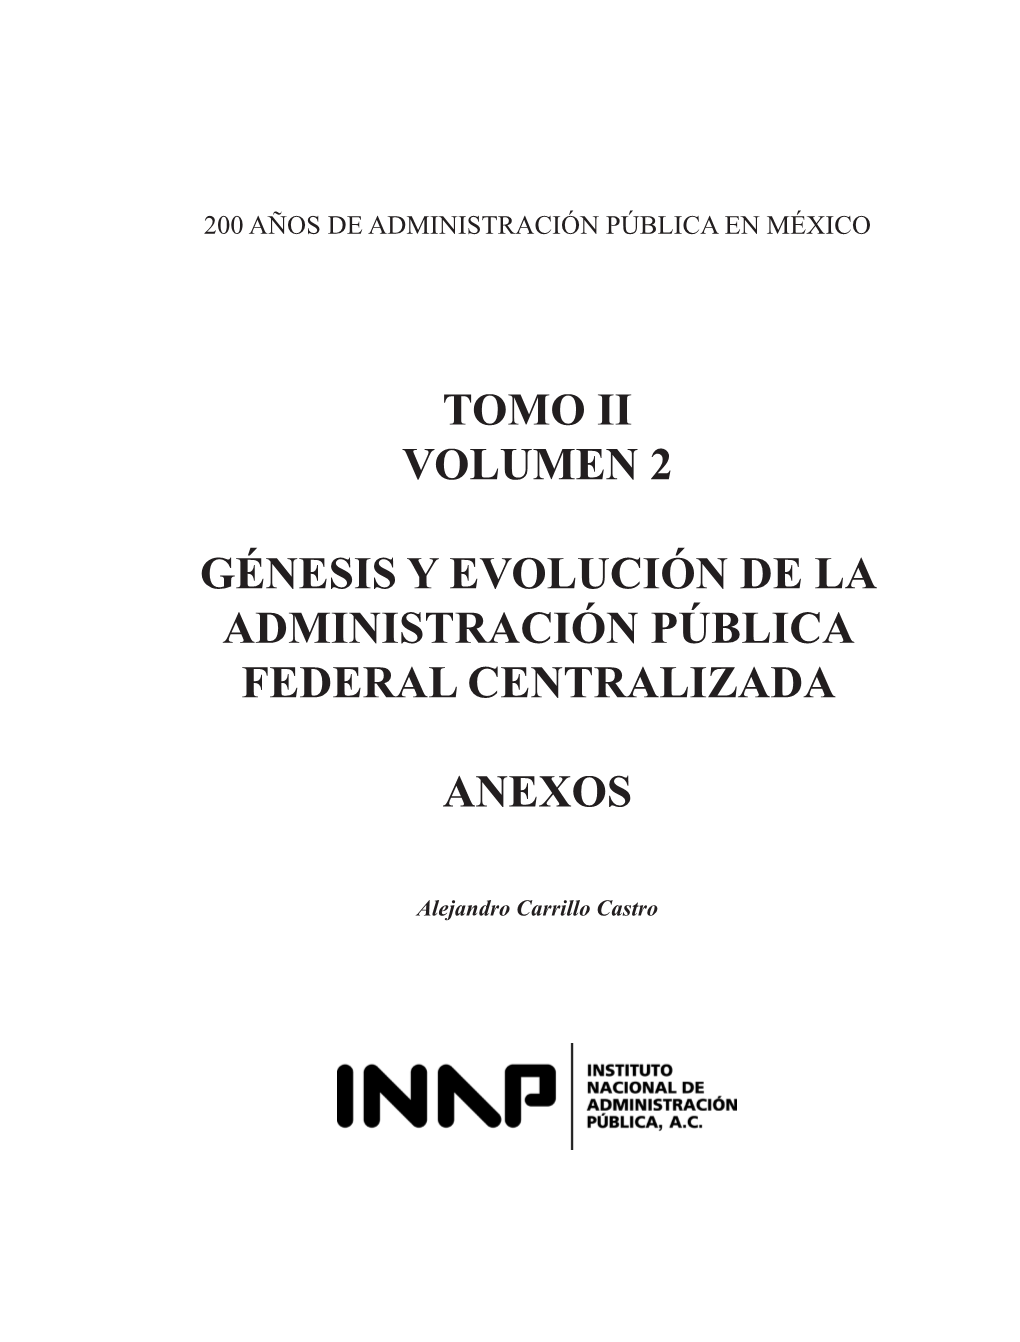 Tomo Ii Volumen 2 Génesis Y Evolución De La Administración Pública Federal Centralizada Anexos